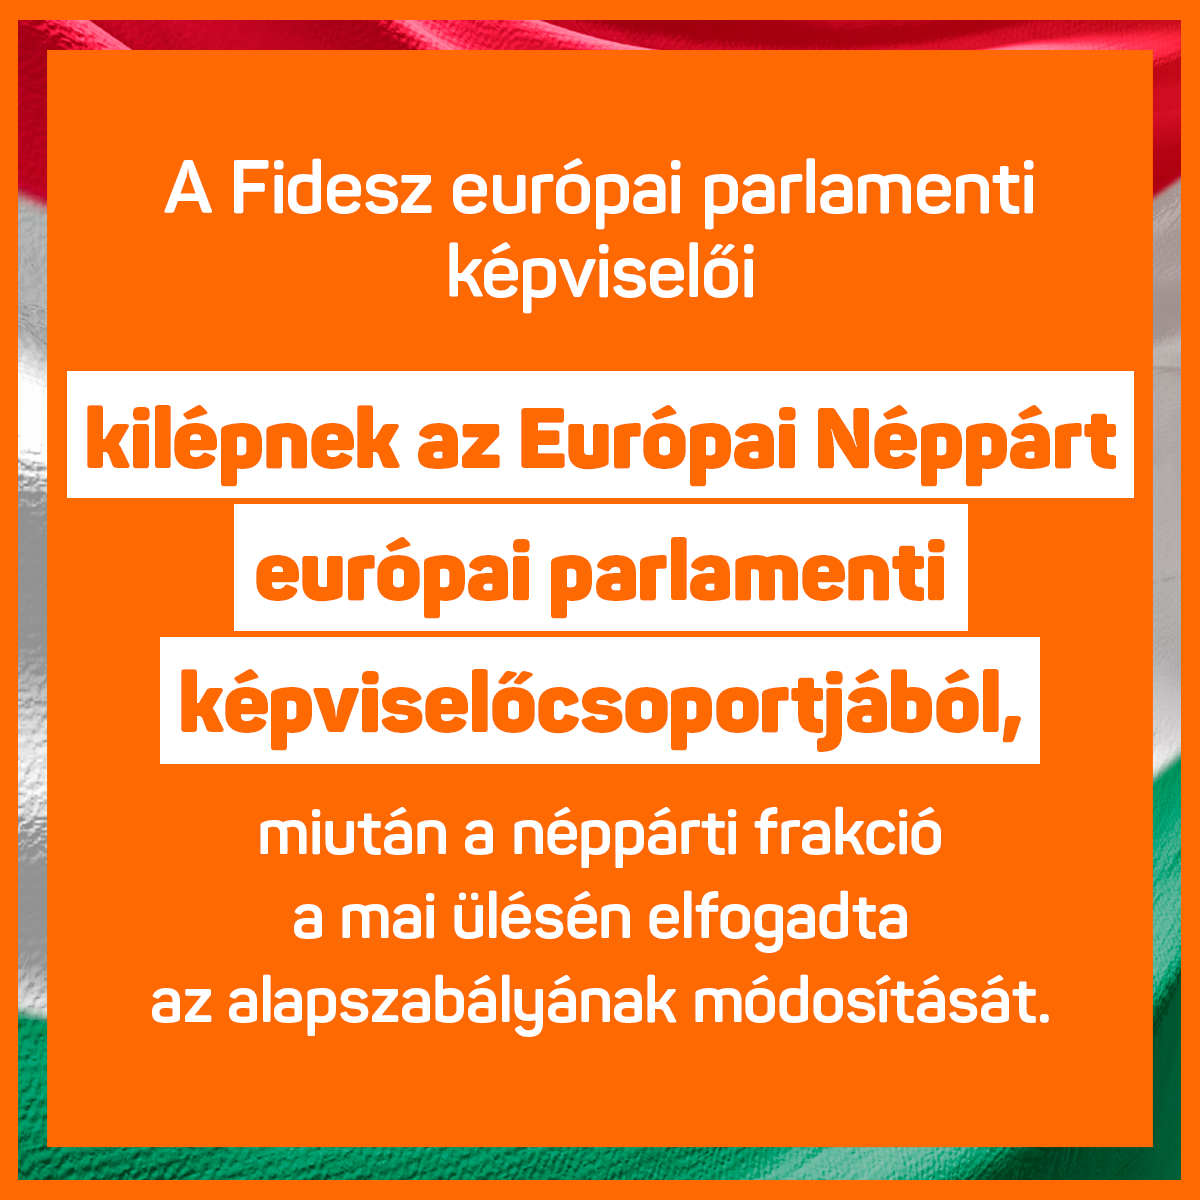 A Fidesz európai parlamenti képviselői kilépnek az Európai Néppárt európai parlamenti képviselőcsoportjából.